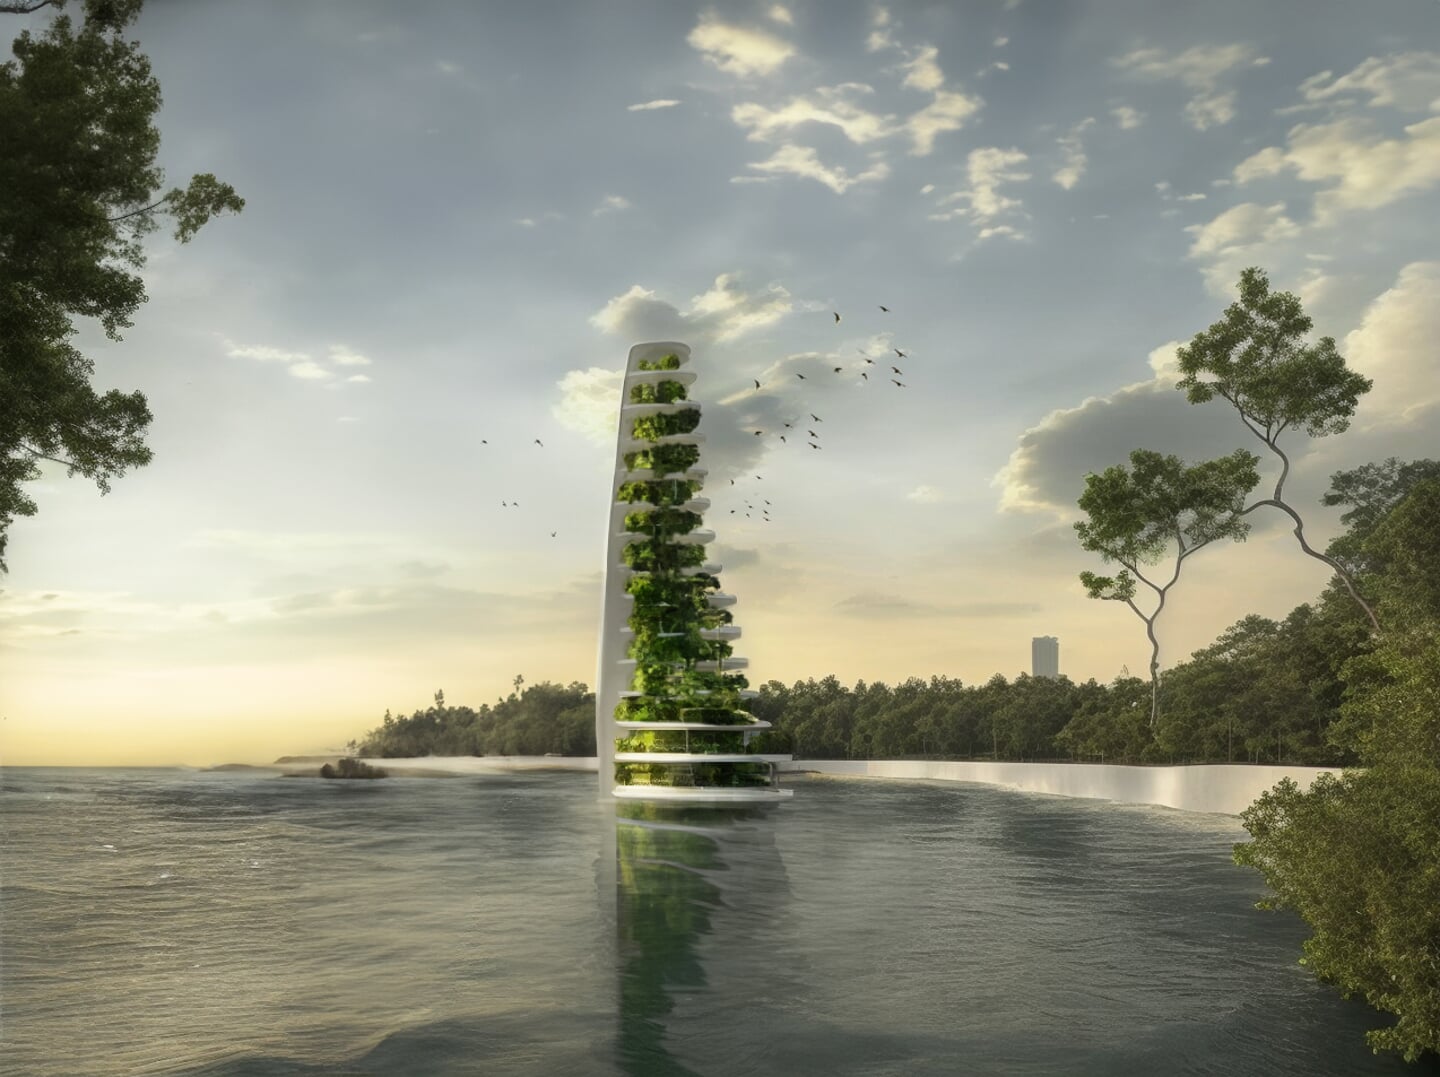 Een 'sea tree': van oude windturbine vleugels wordt een drijvende toren gemaakt die vol staat met groen, zodat het bijen en vogels aantrekt. 